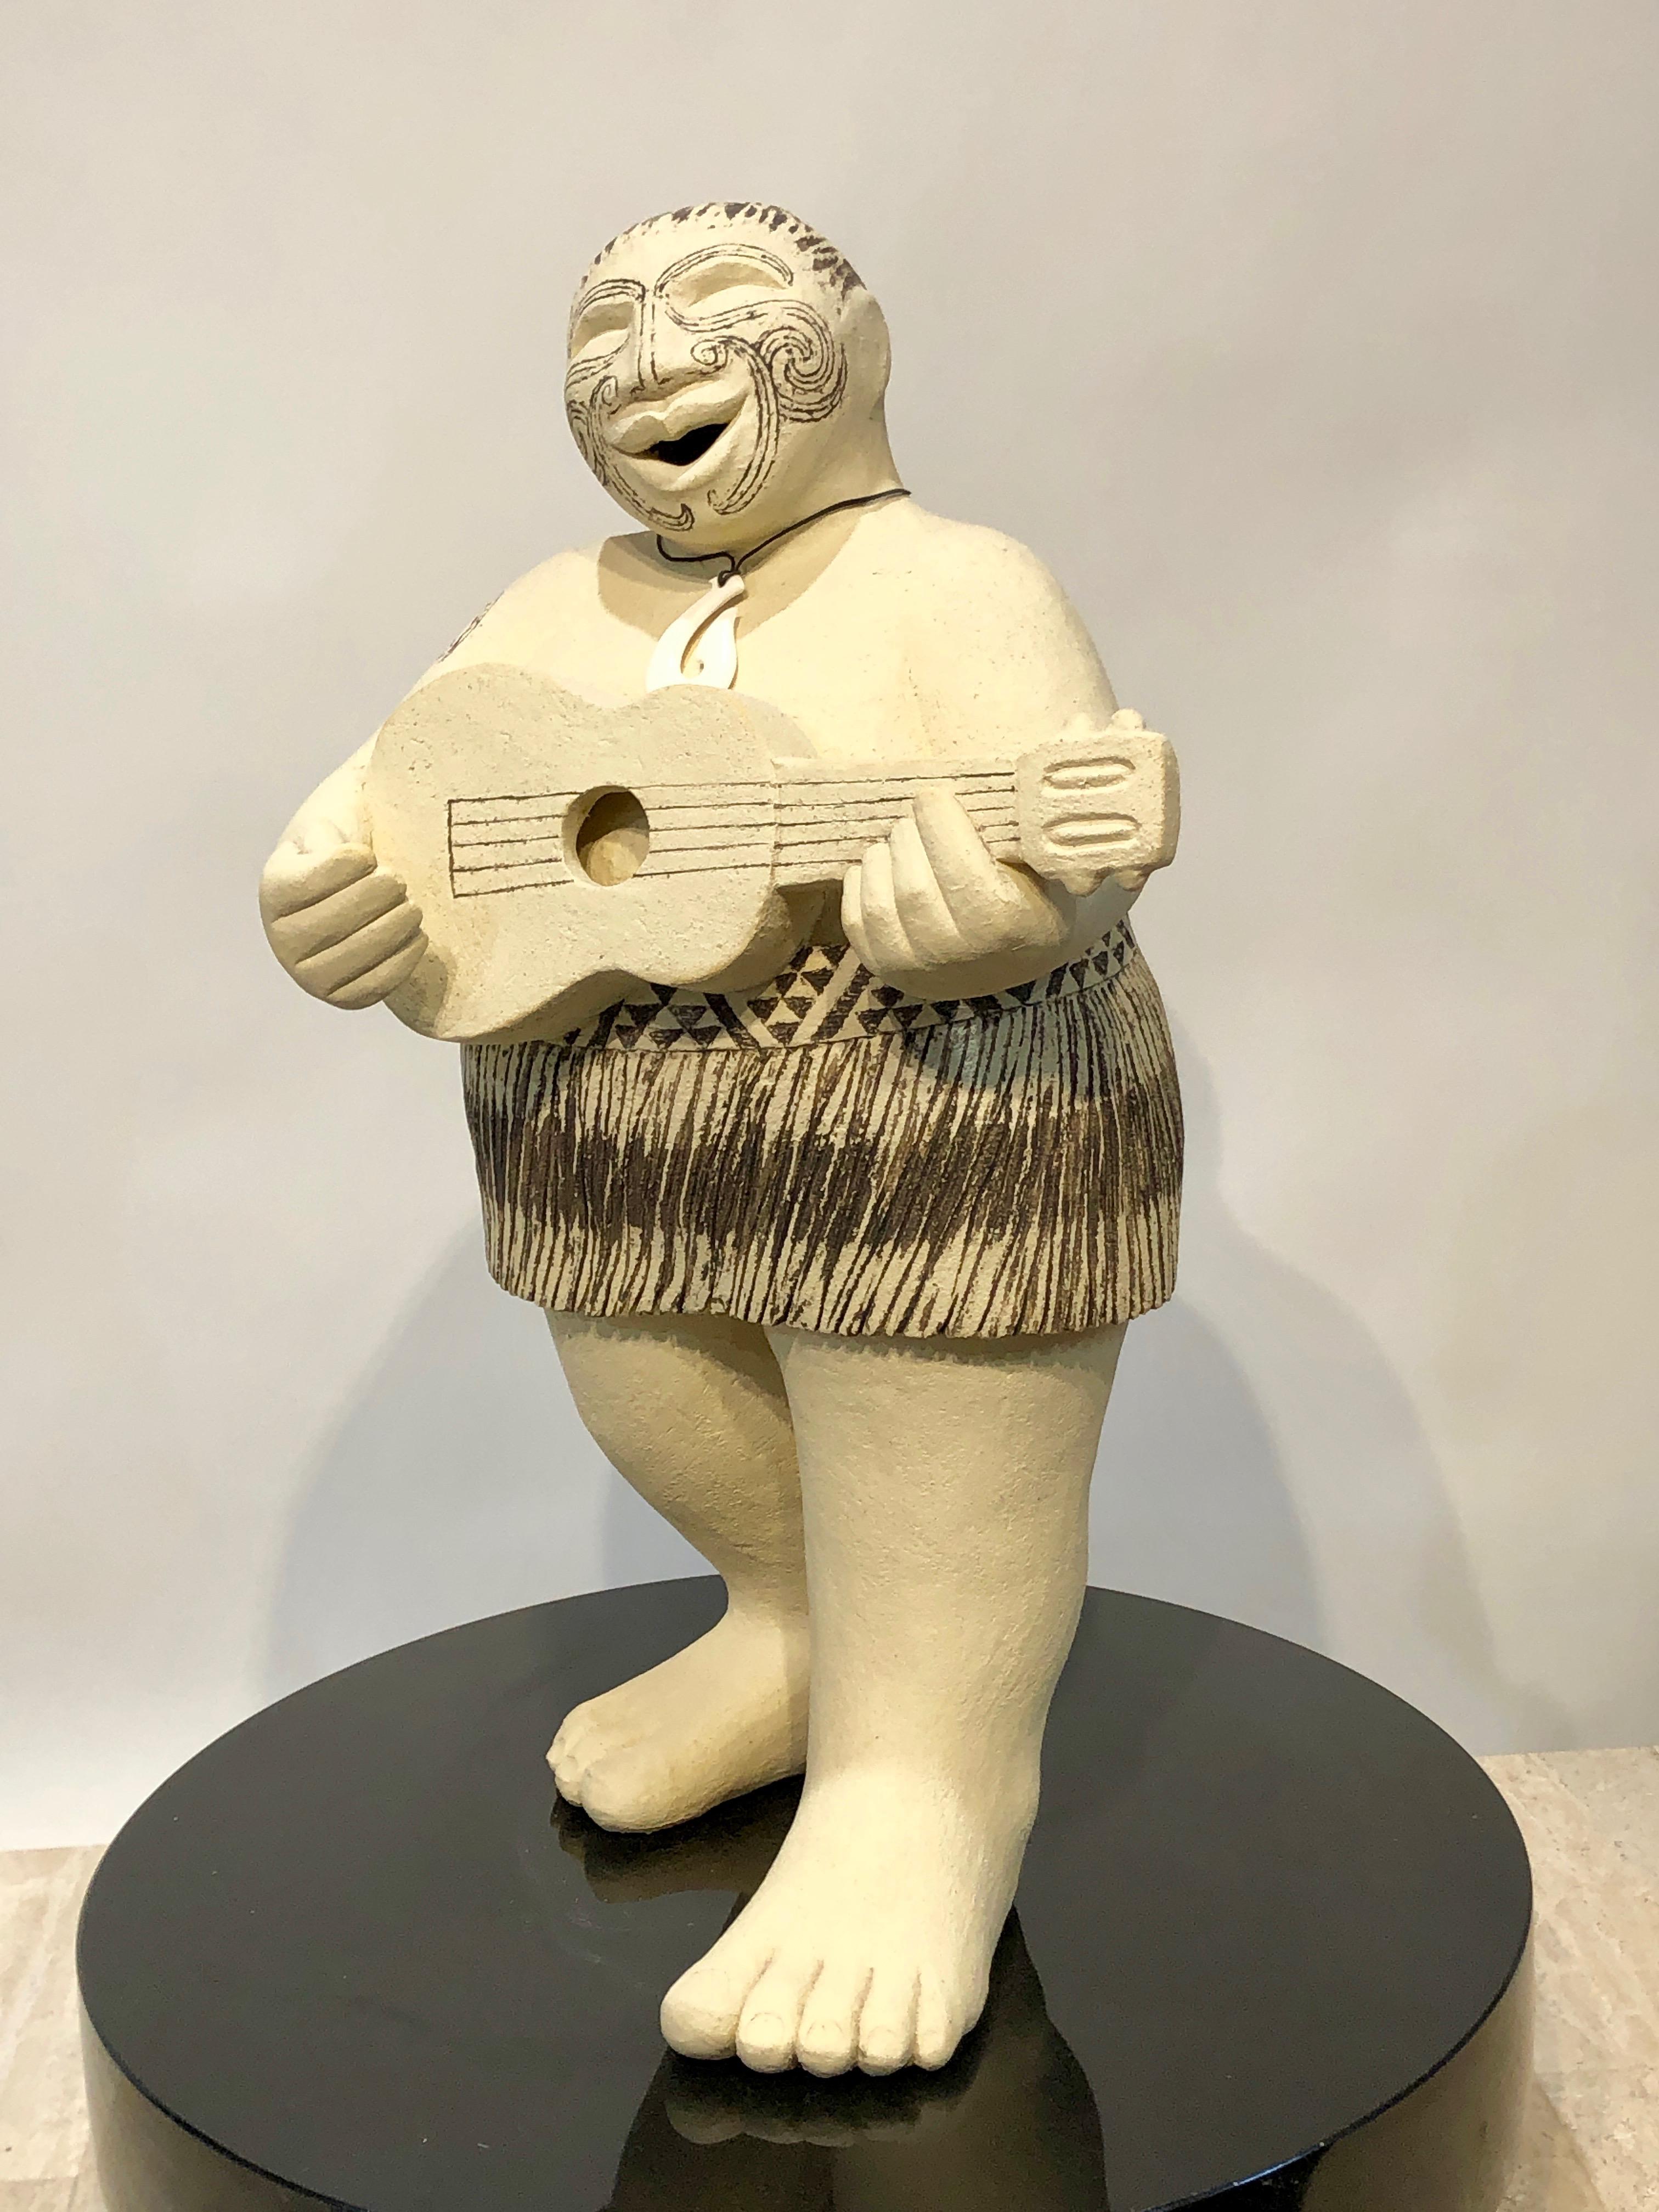 Waita - Song, Escultura maorí contemporánea, Aotearoa, moko facial, tatuaje, hombre